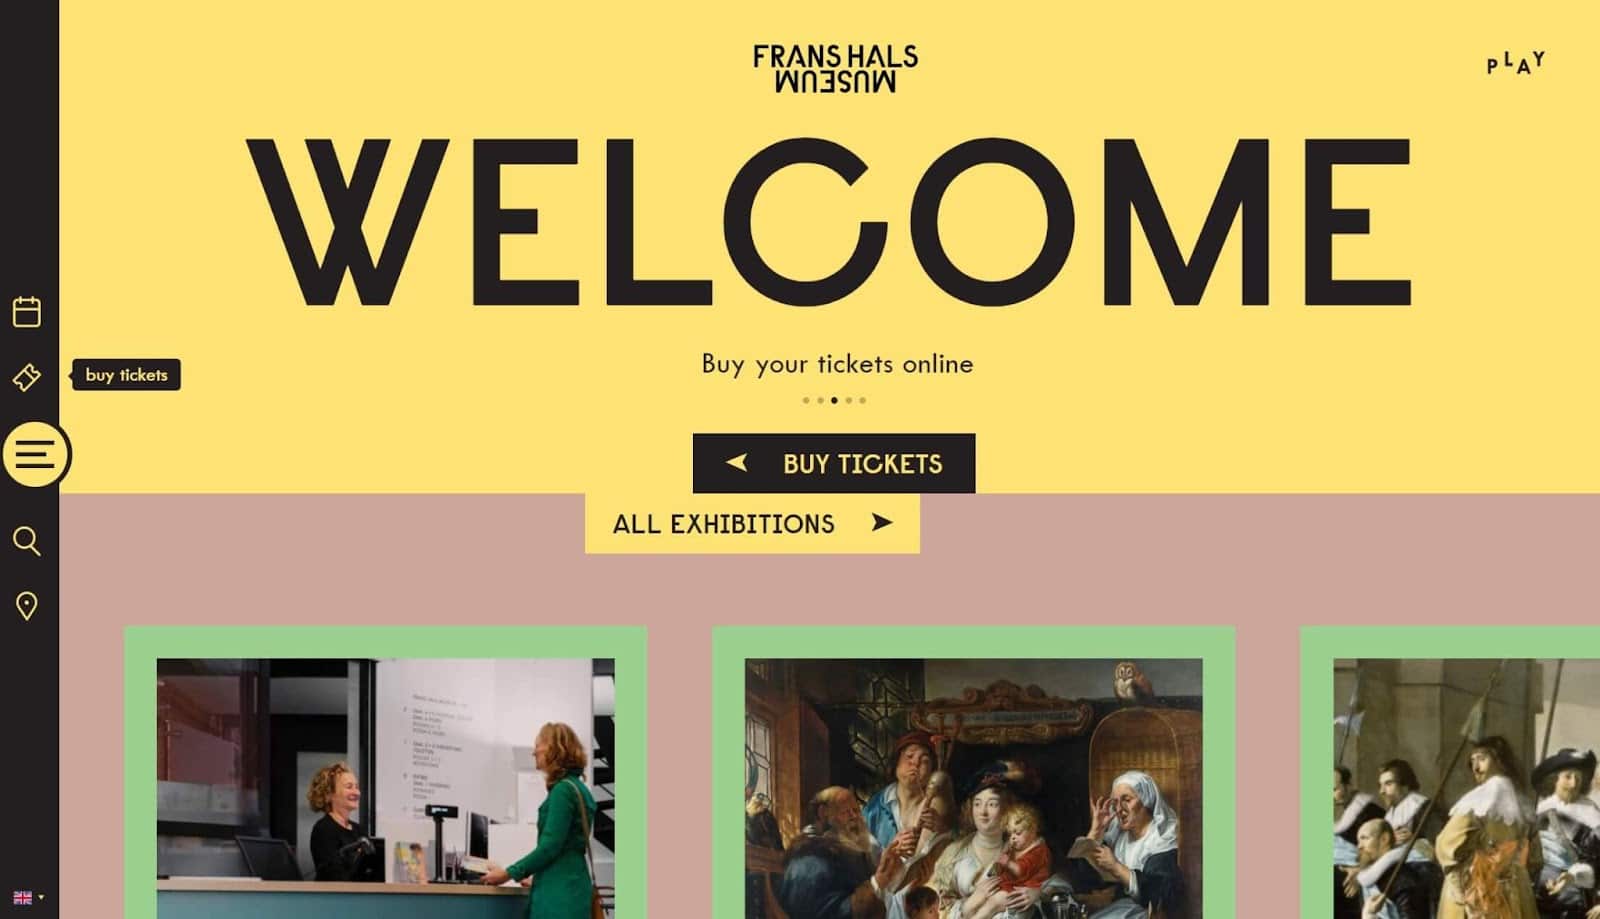 Le Musée Frans Hals utilise une hiérarchie visuelle